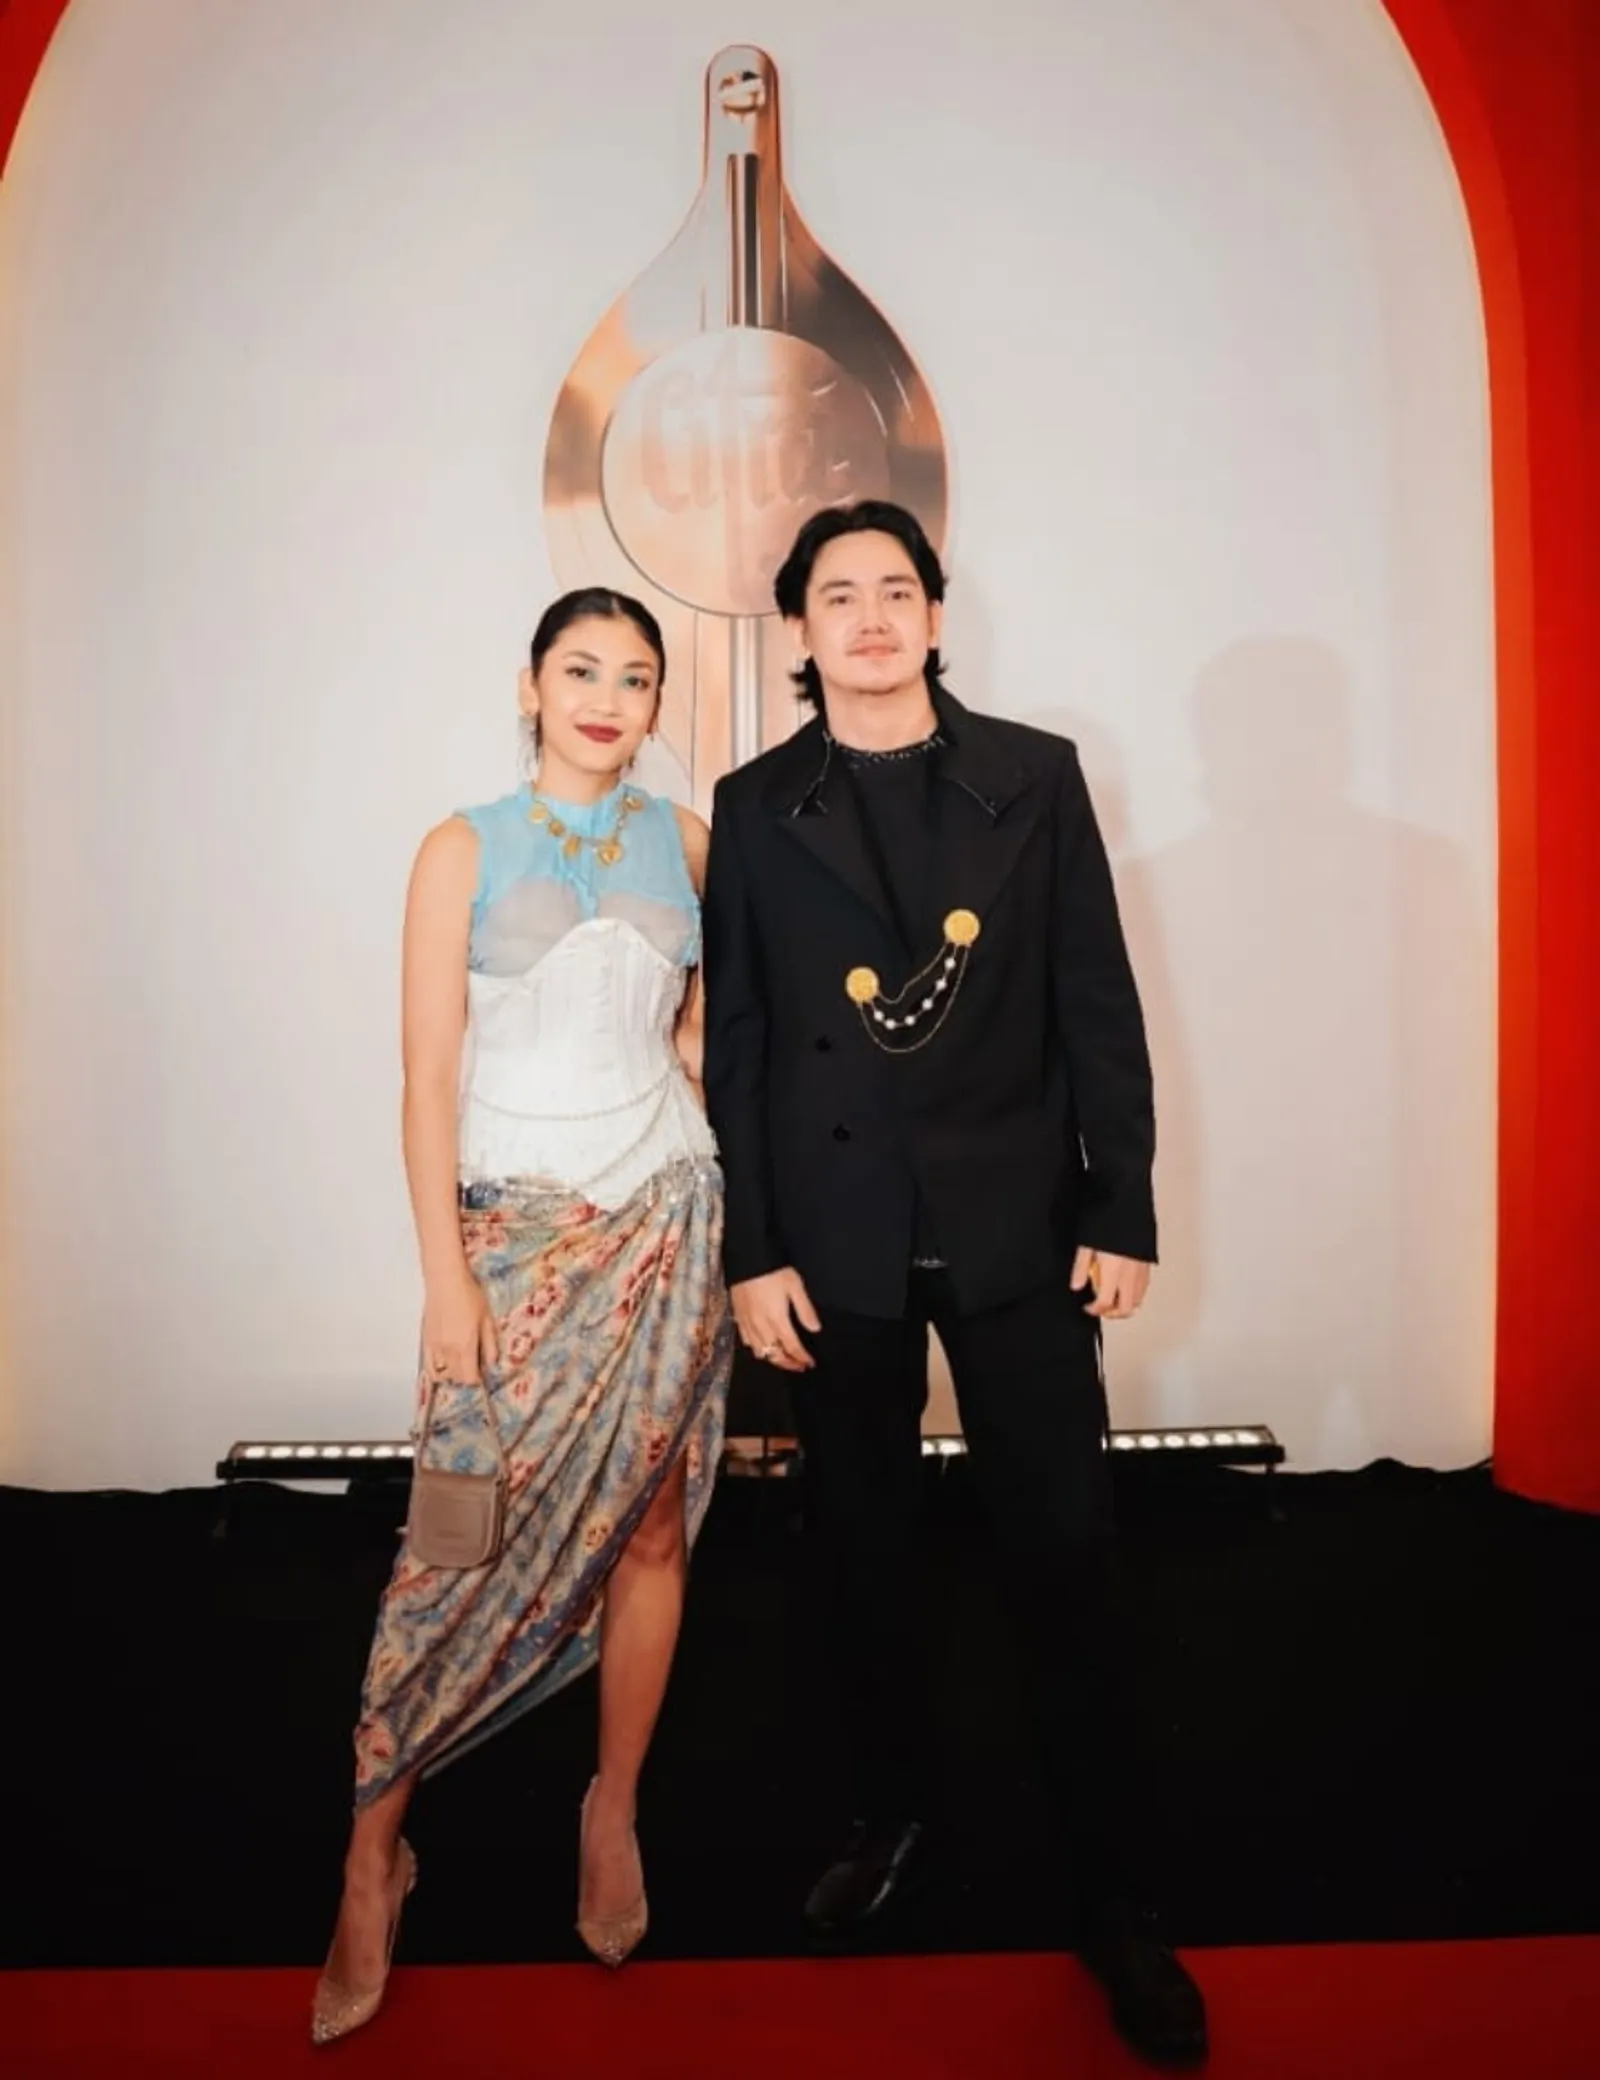 5 Pasangan Seleb yang Hadir di Acara Festival Film Indonesia 2023